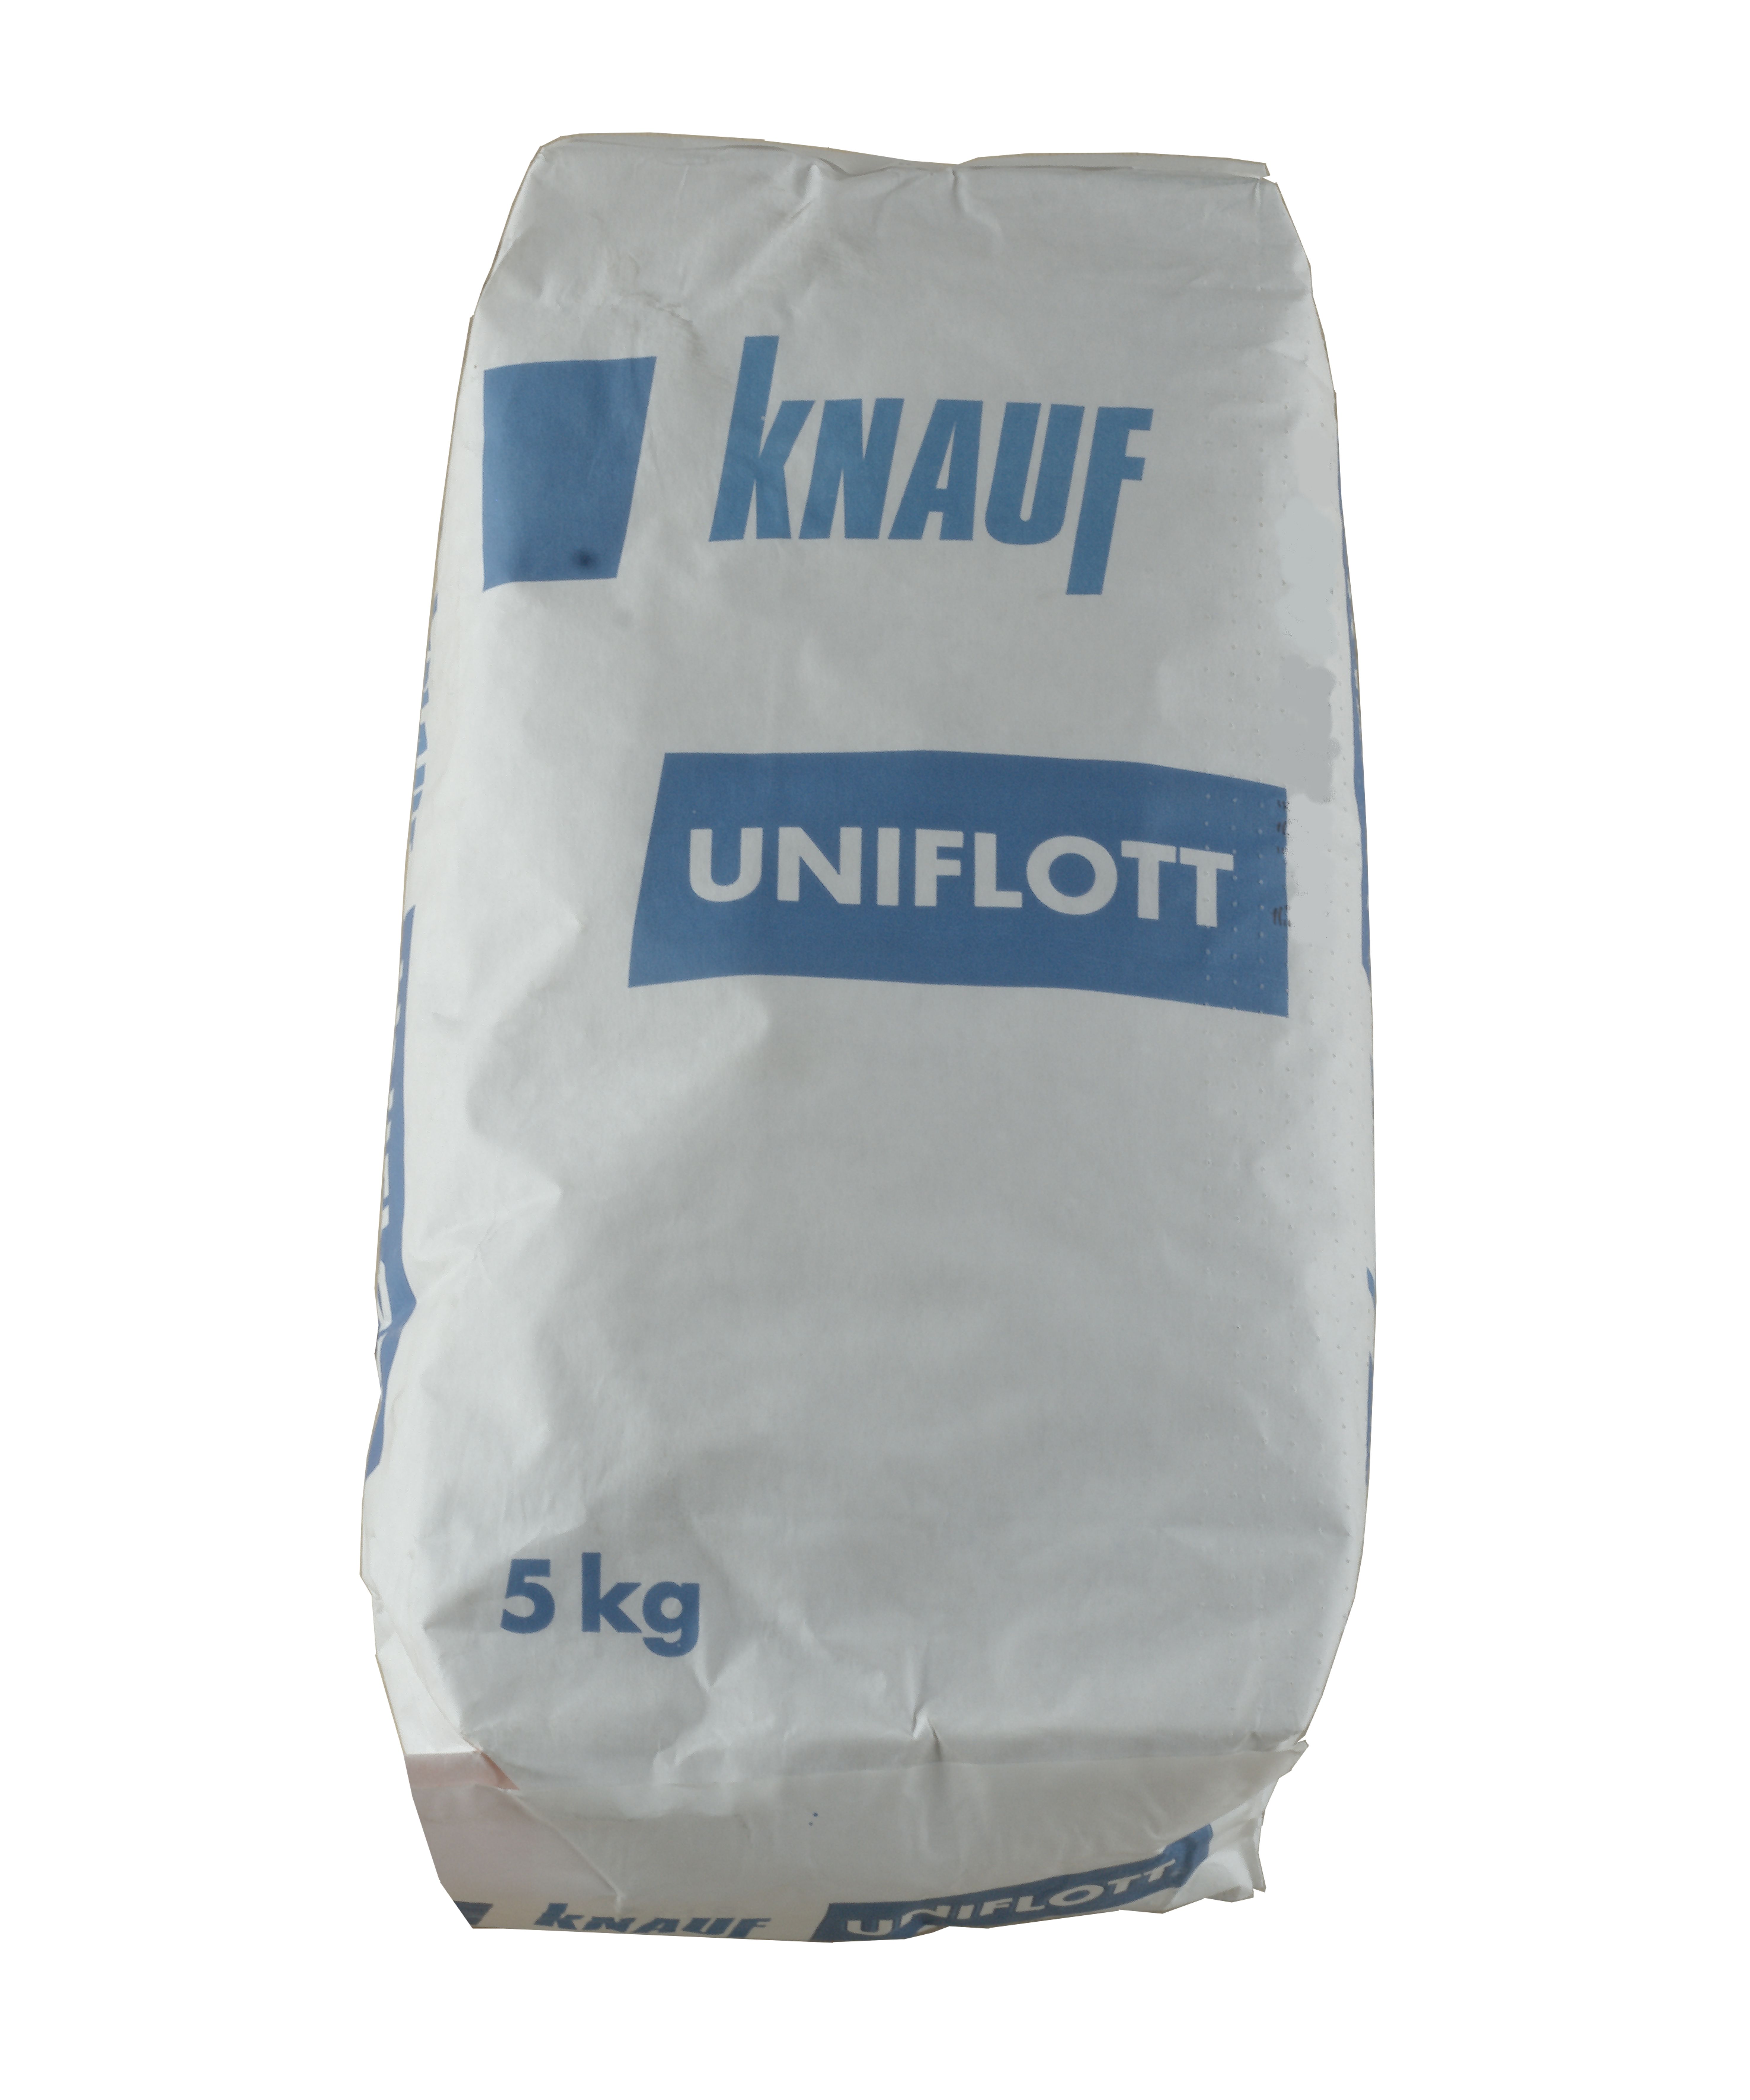 Knauf Uniflott   5 kg